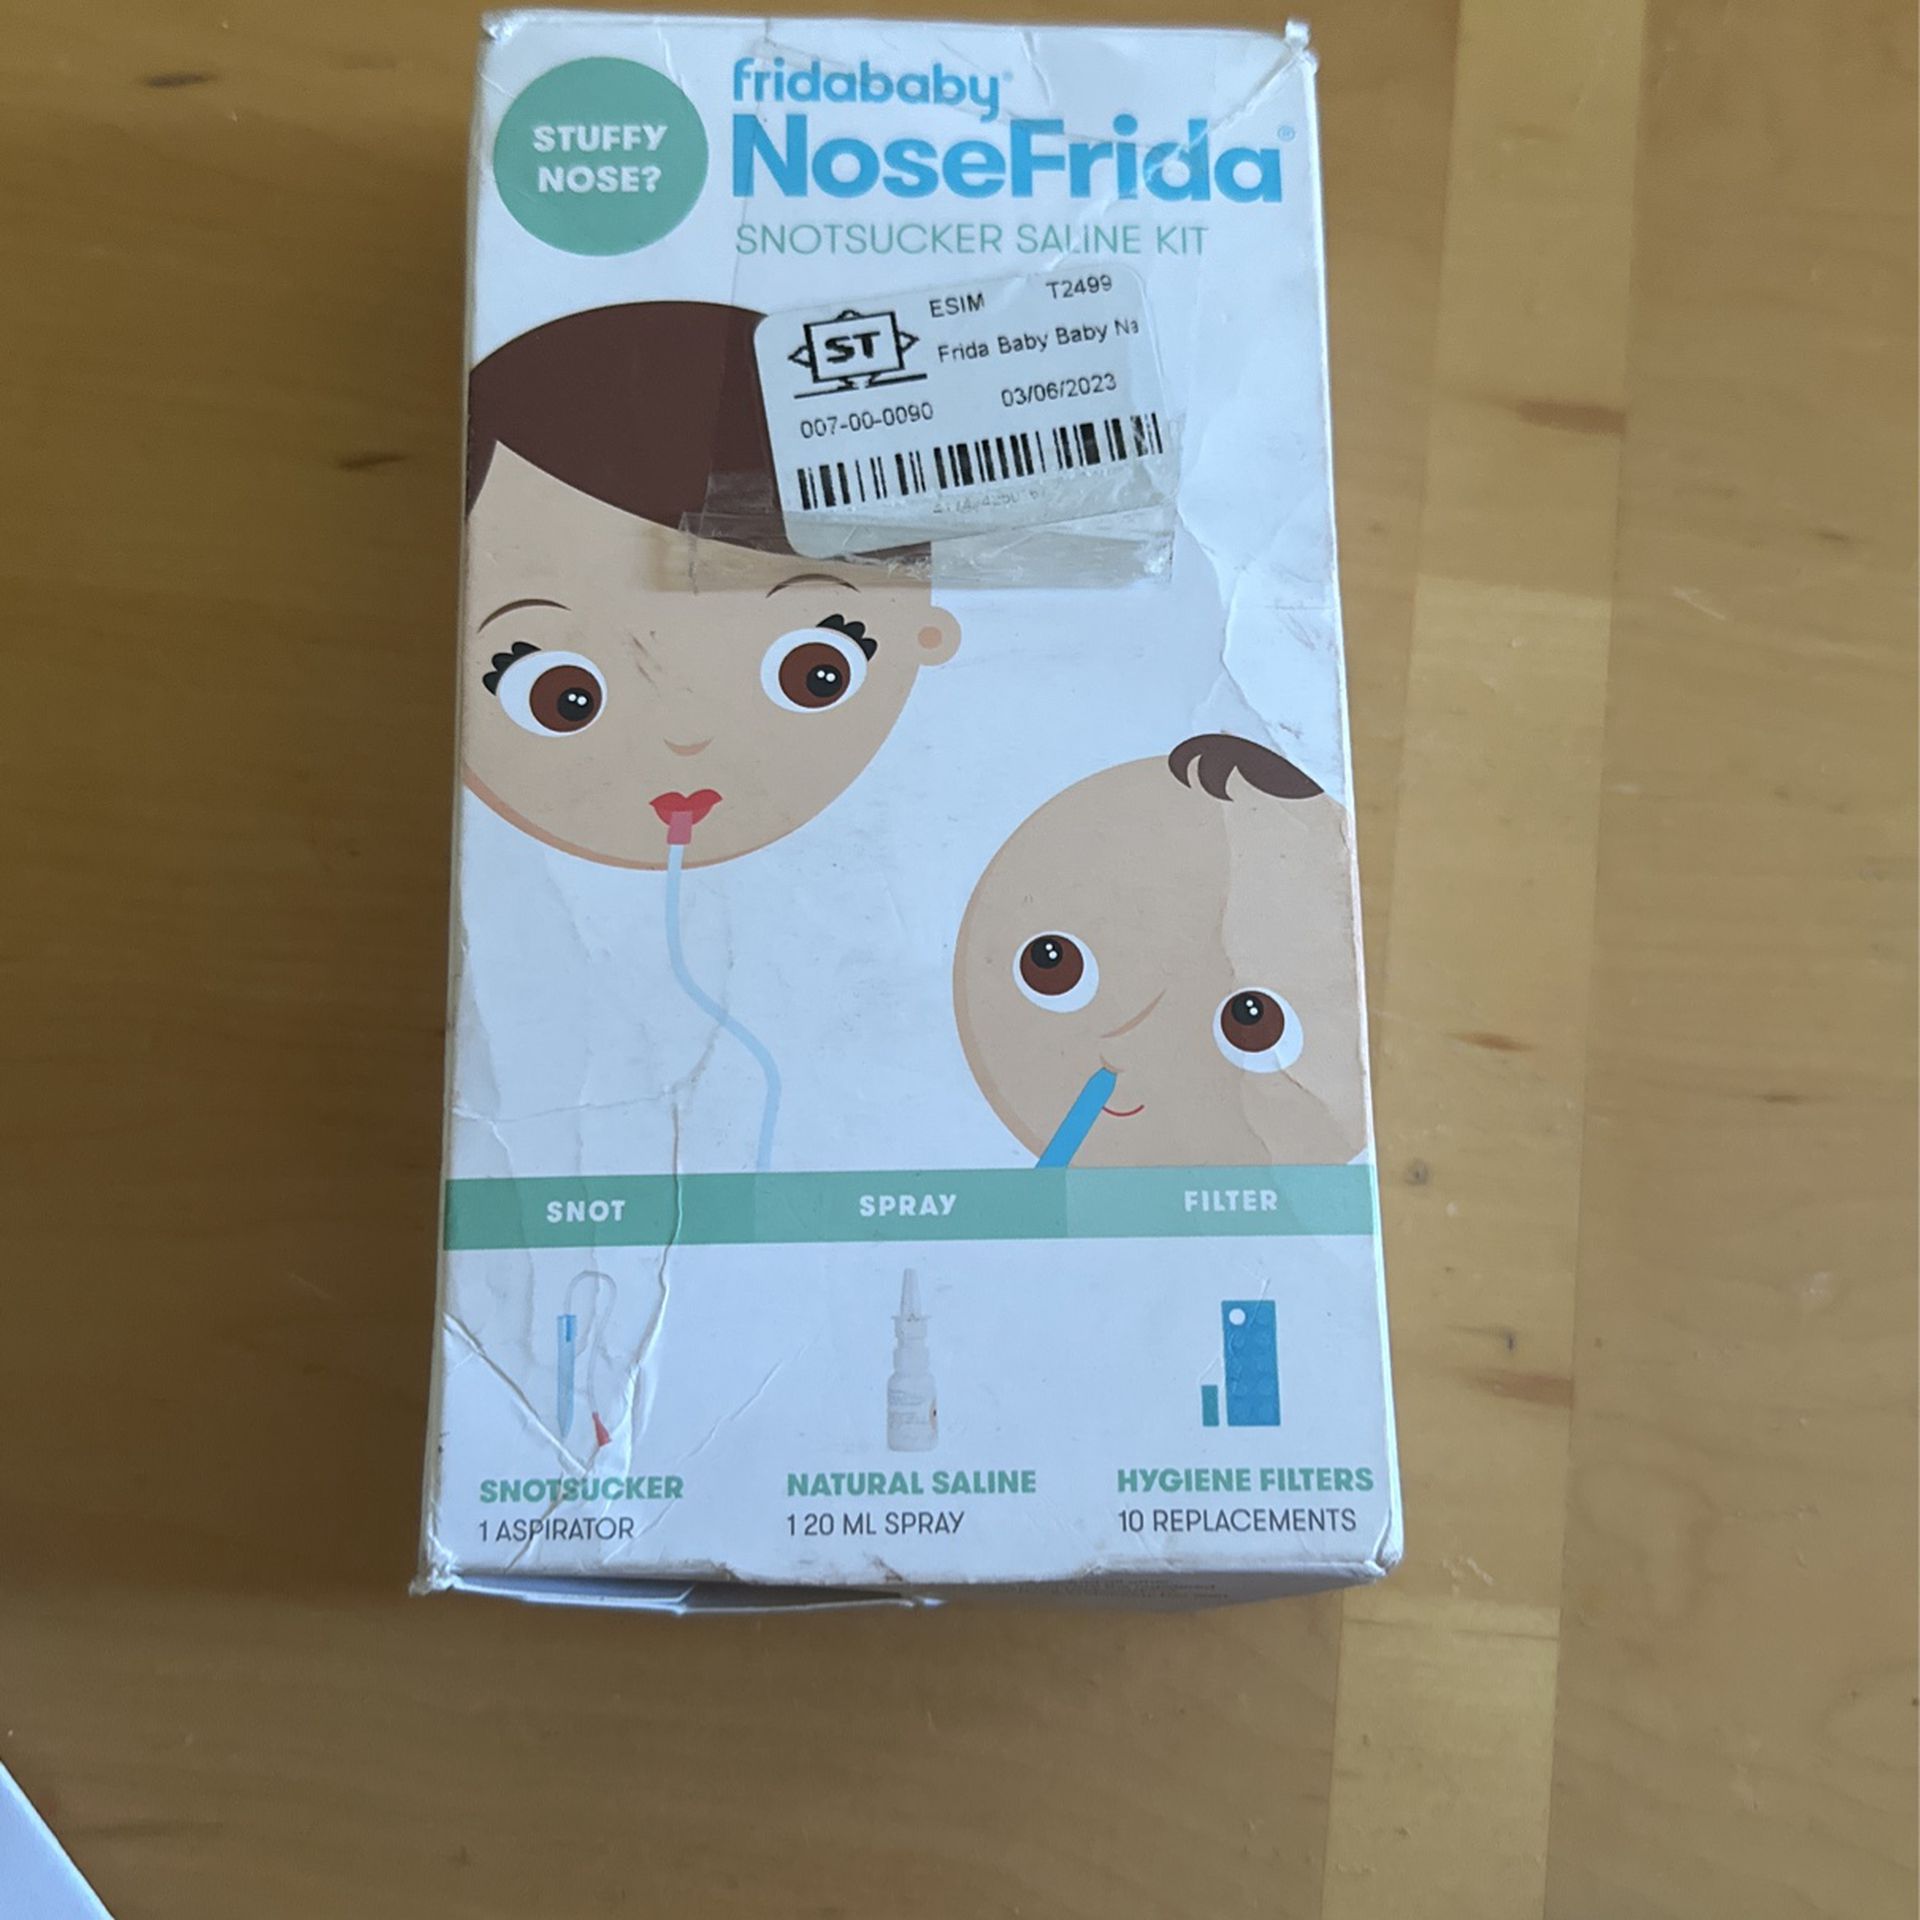 Fridababy - NoseFrida Snotsucker Saline Kit